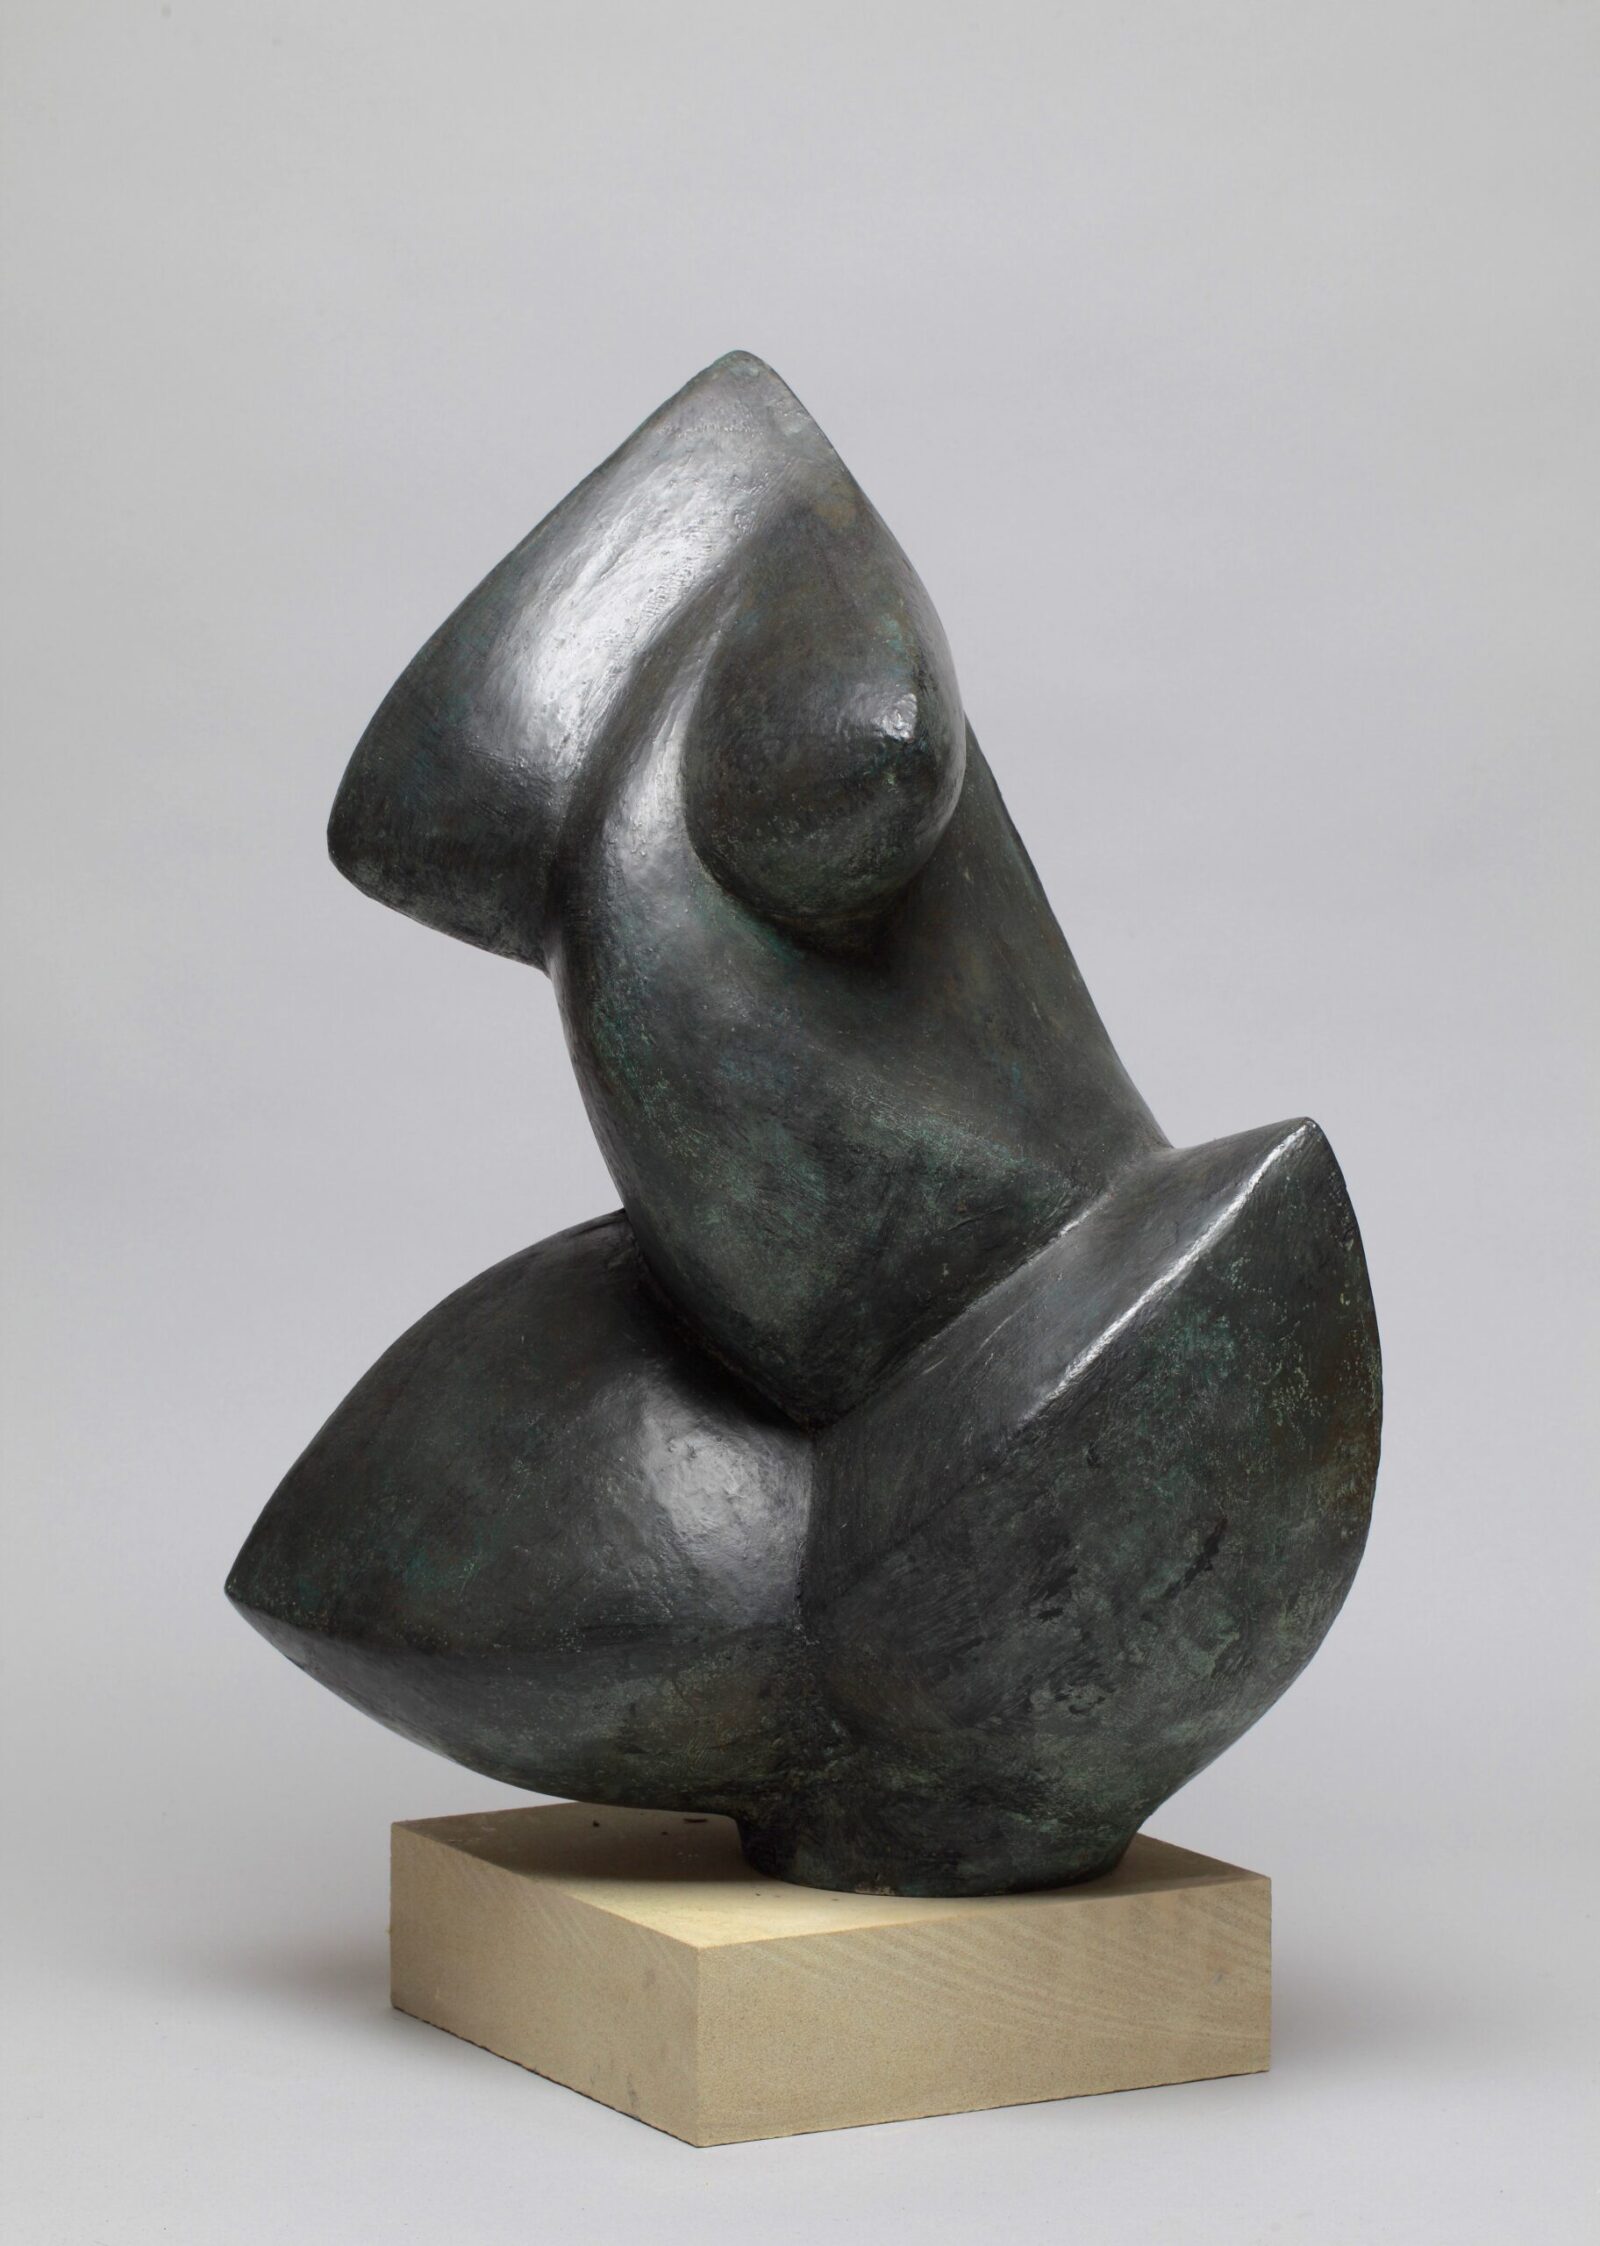 contemporary bronze sculpture of an abstract figure for garden or interior design